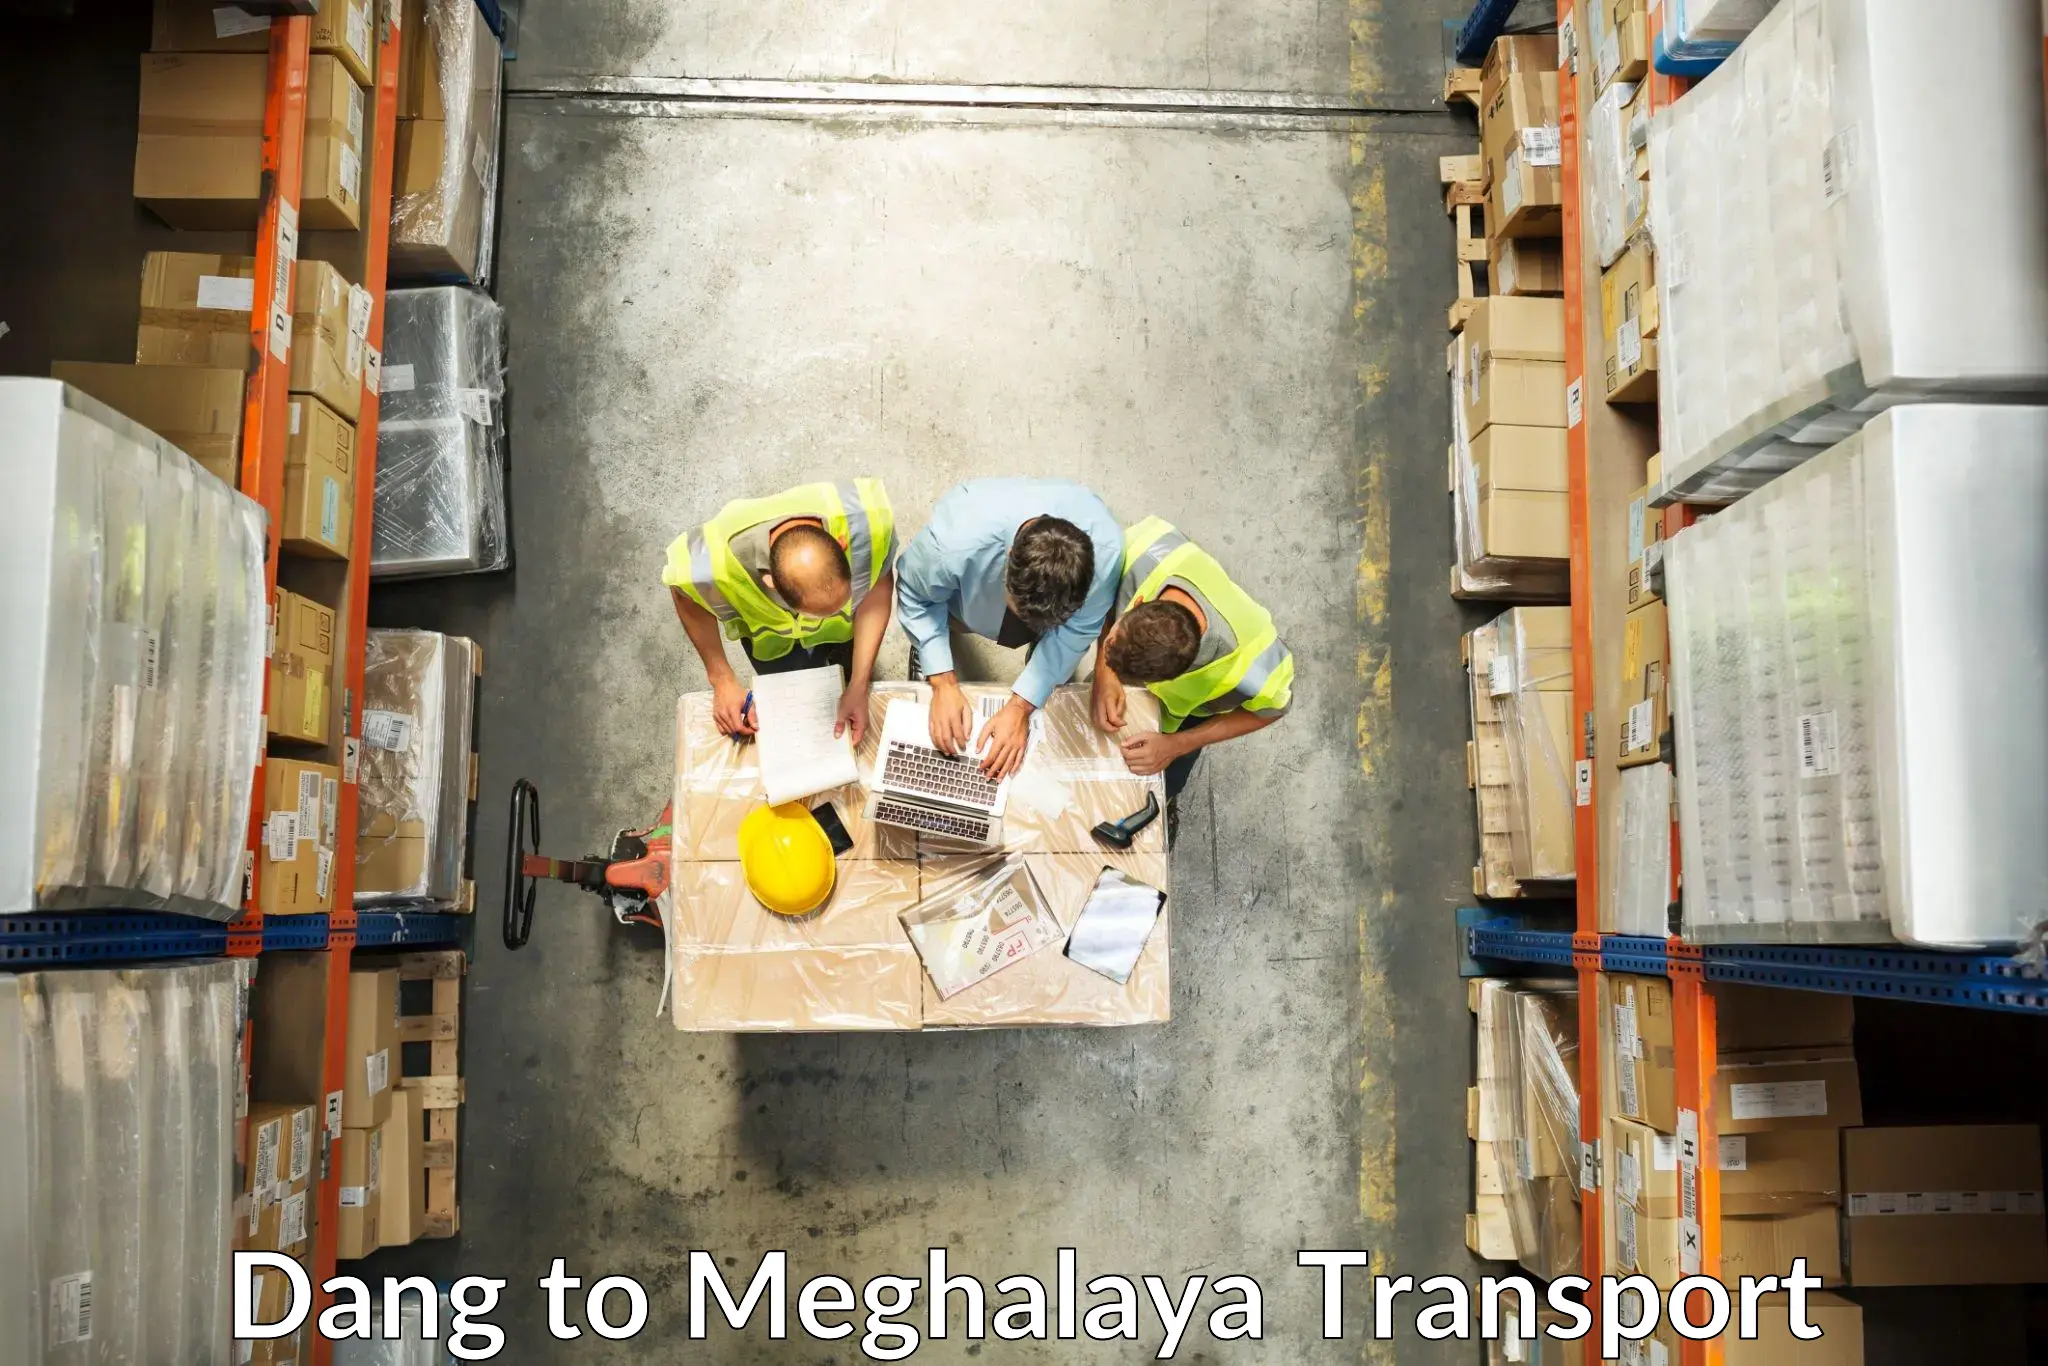 Two wheeler transport services Dang to Meghalaya